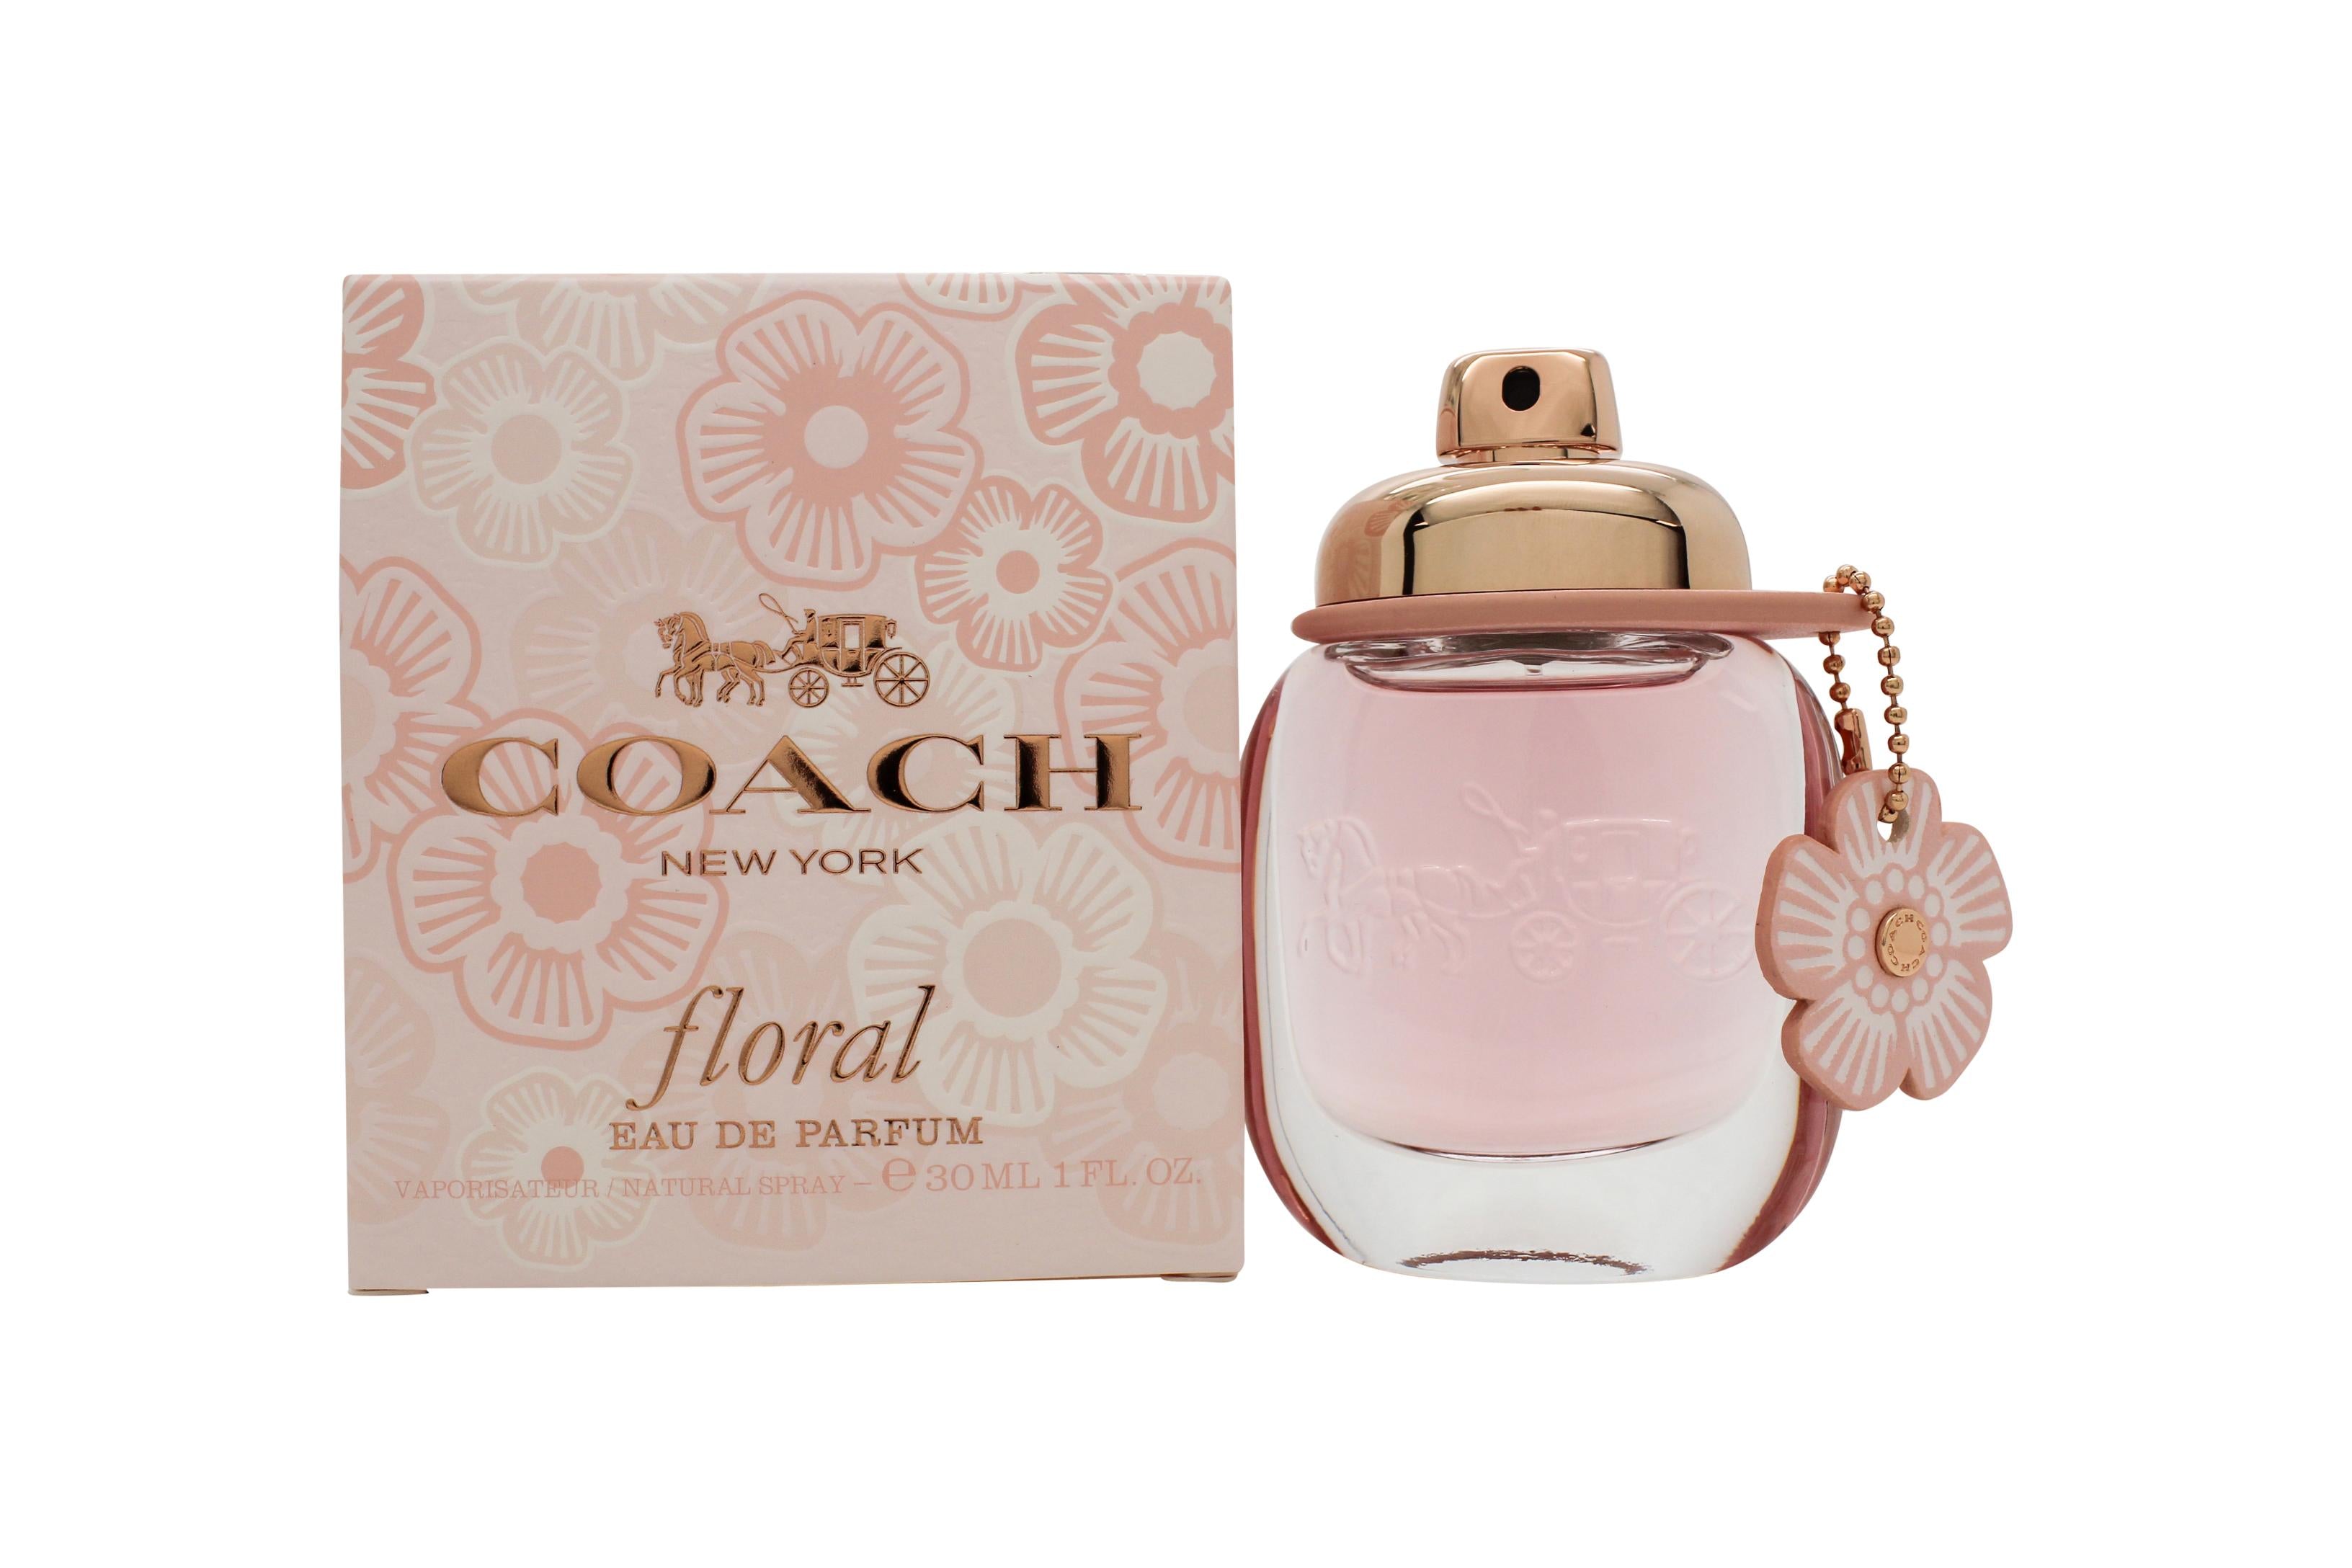 View Coach Floral Eau de Parfum 30ml Spray information